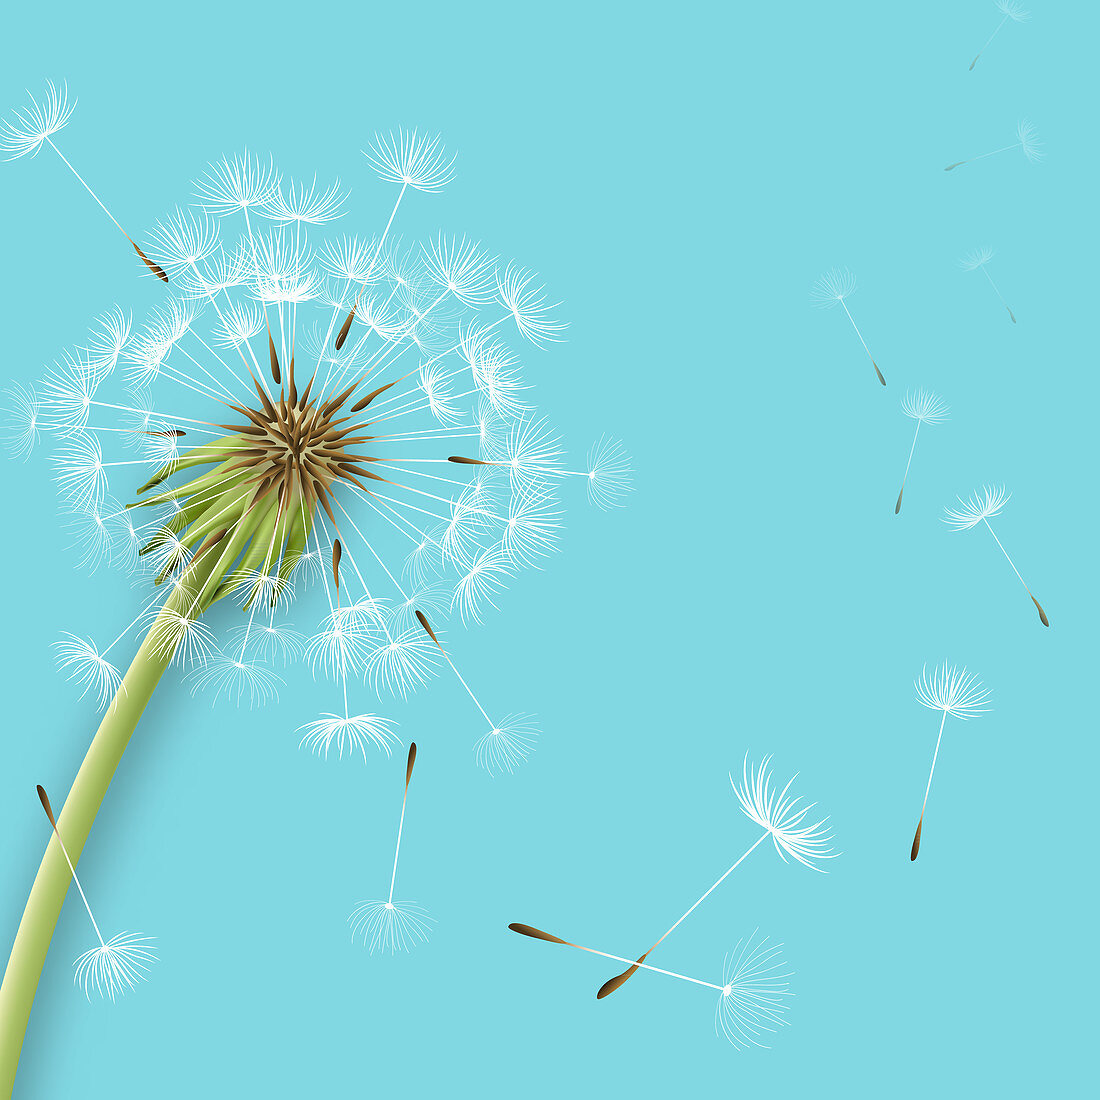 Dandelion seedhead, illustration